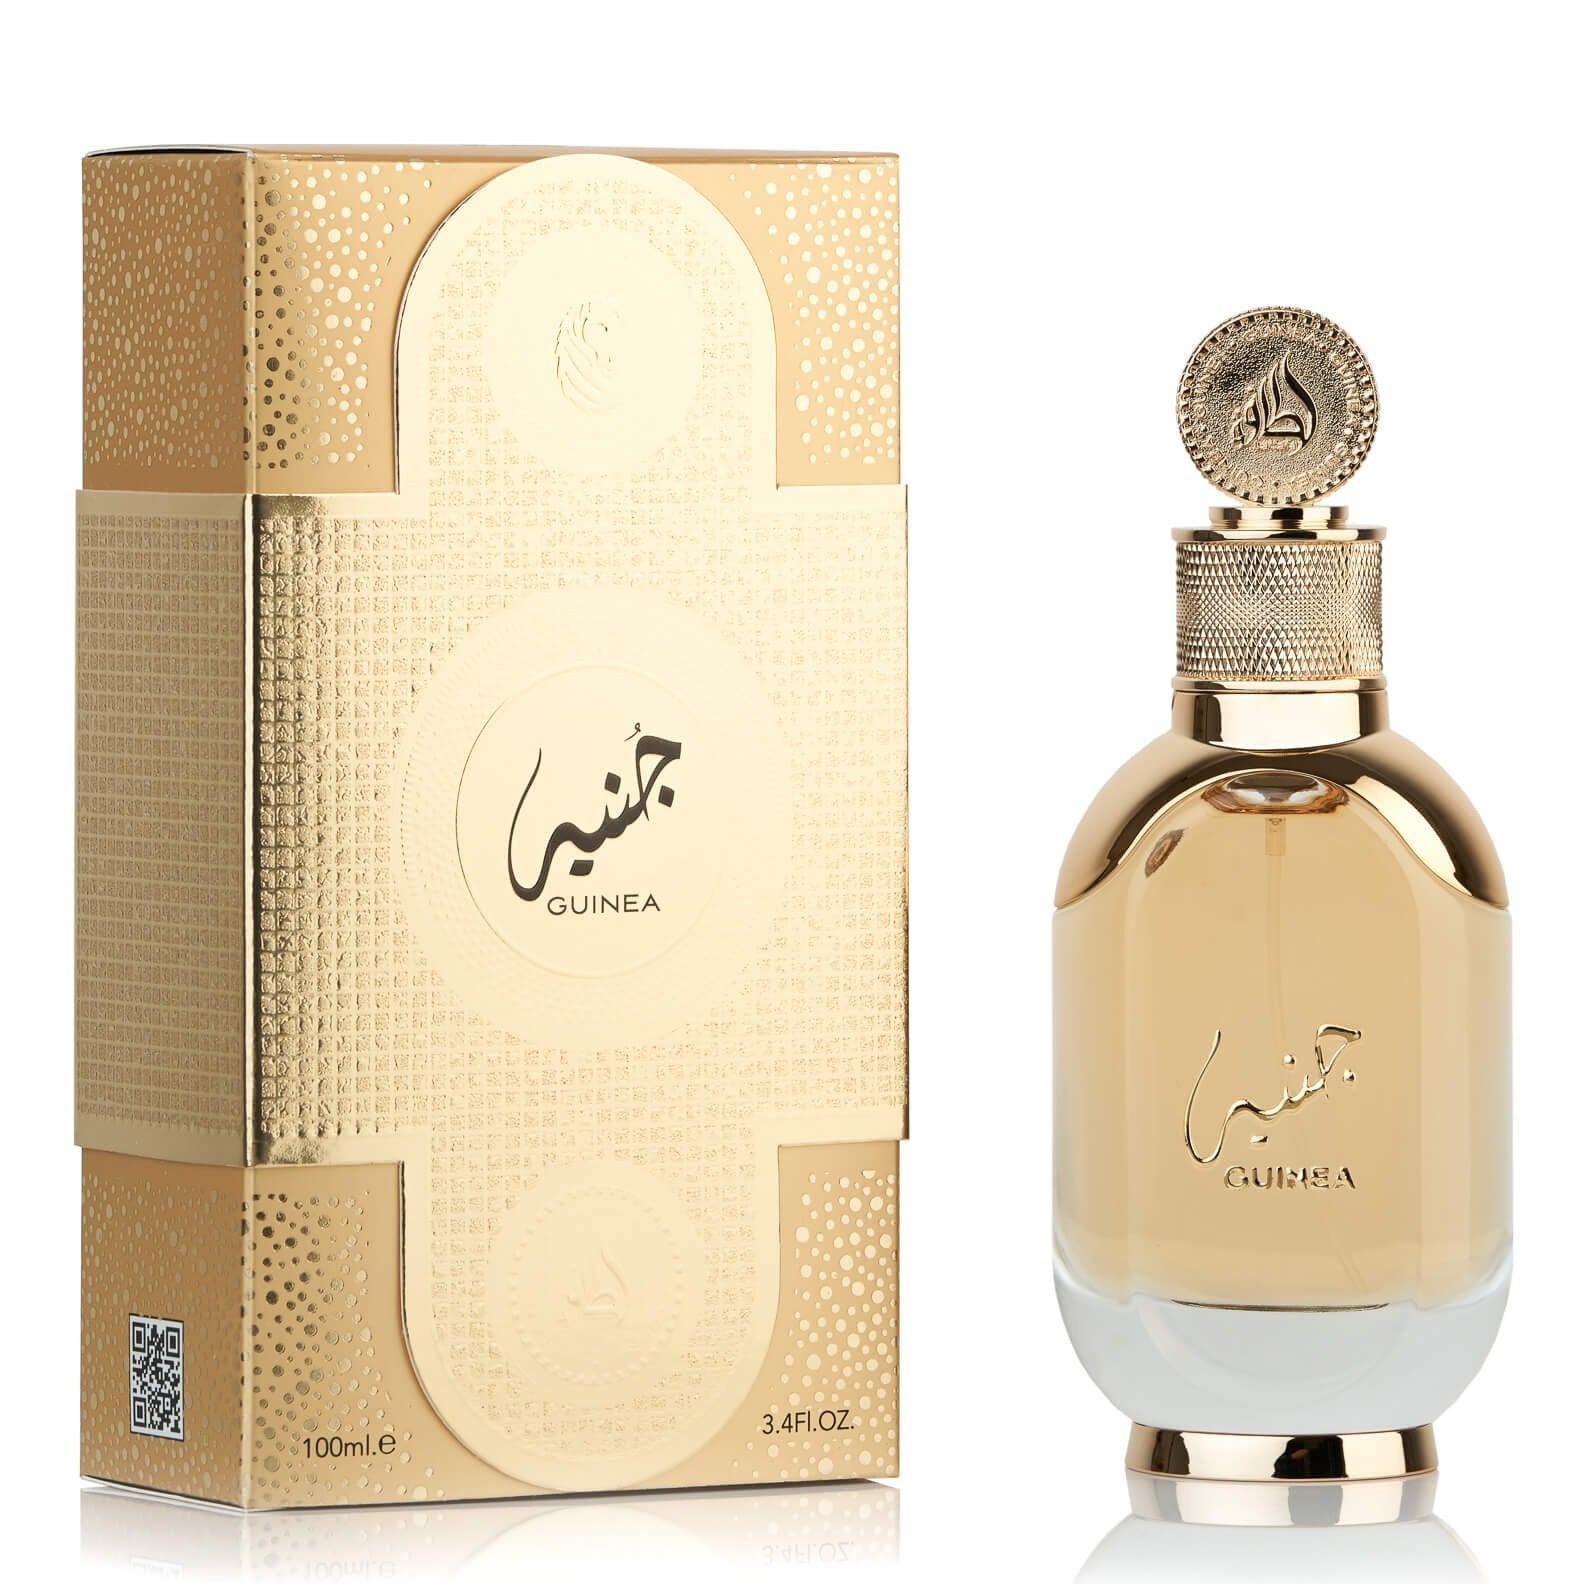 Guinea Eau De Parfum 100ml Lattafa-almanaar Islamic Store